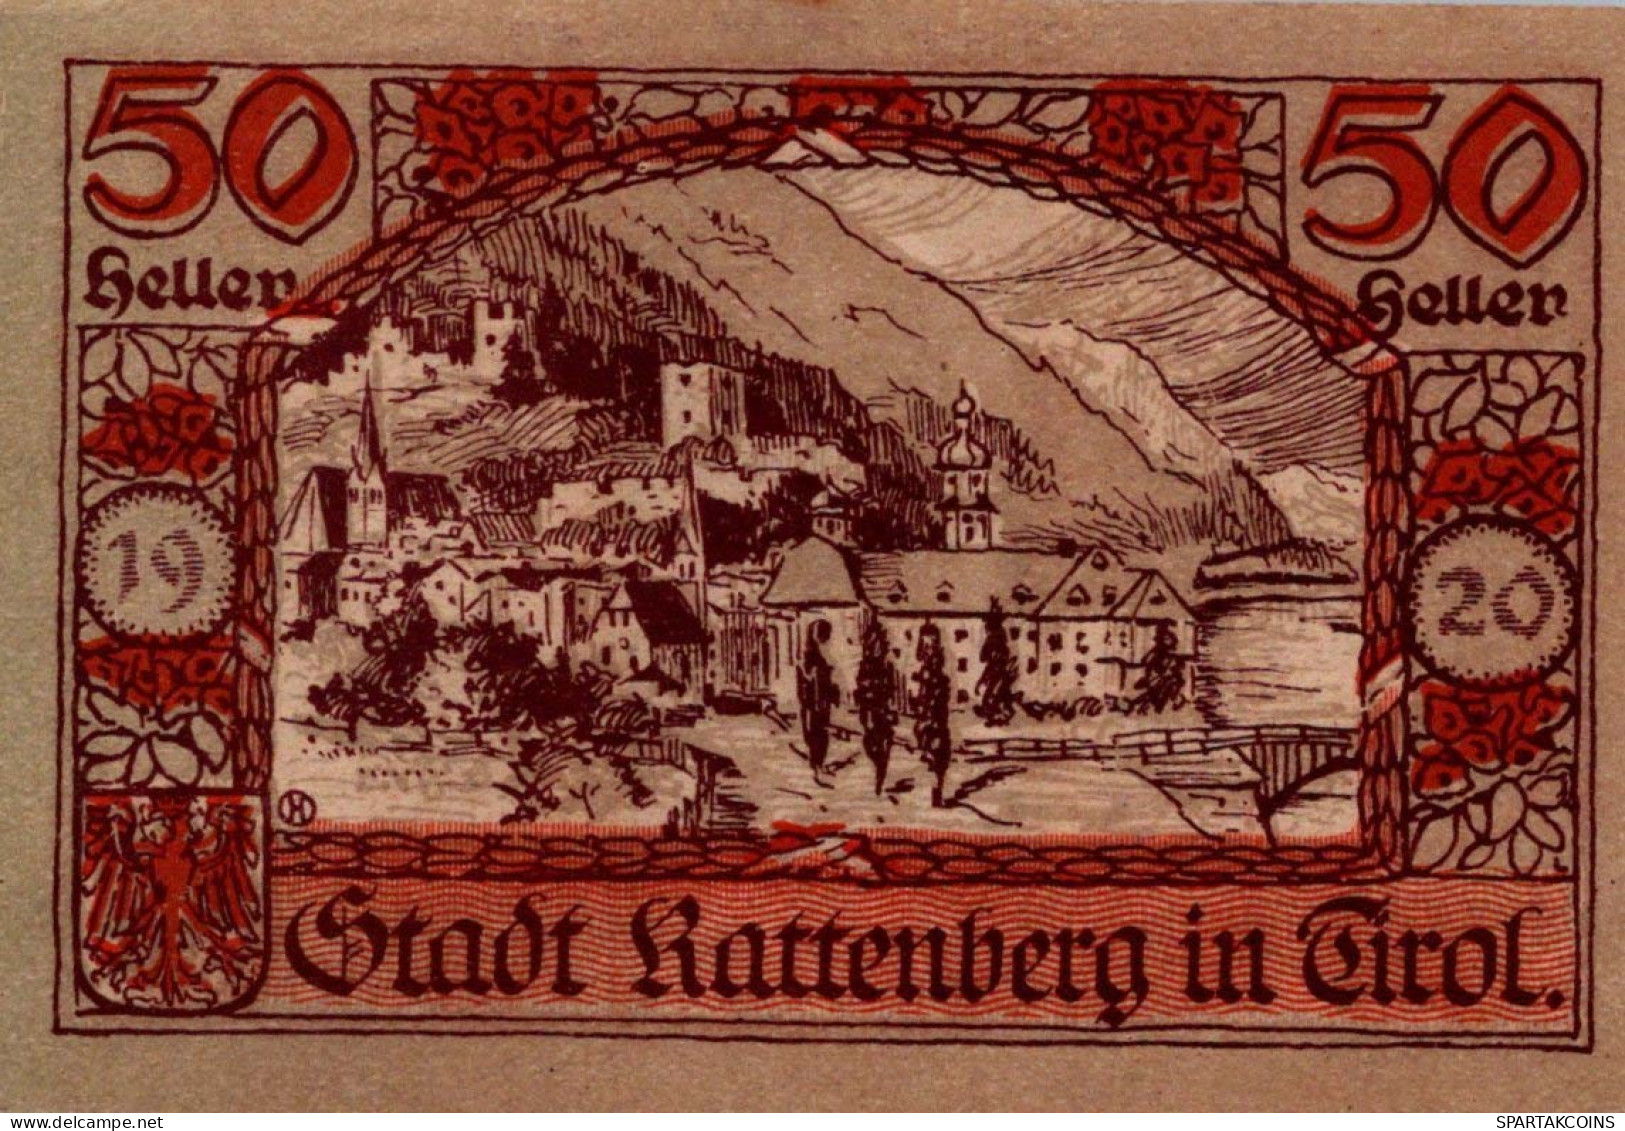 50 HELLER 1920 Stadt RATTENBERG Tyrol Österreich Notgeld Banknote #PE522 - [11] Emissioni Locali